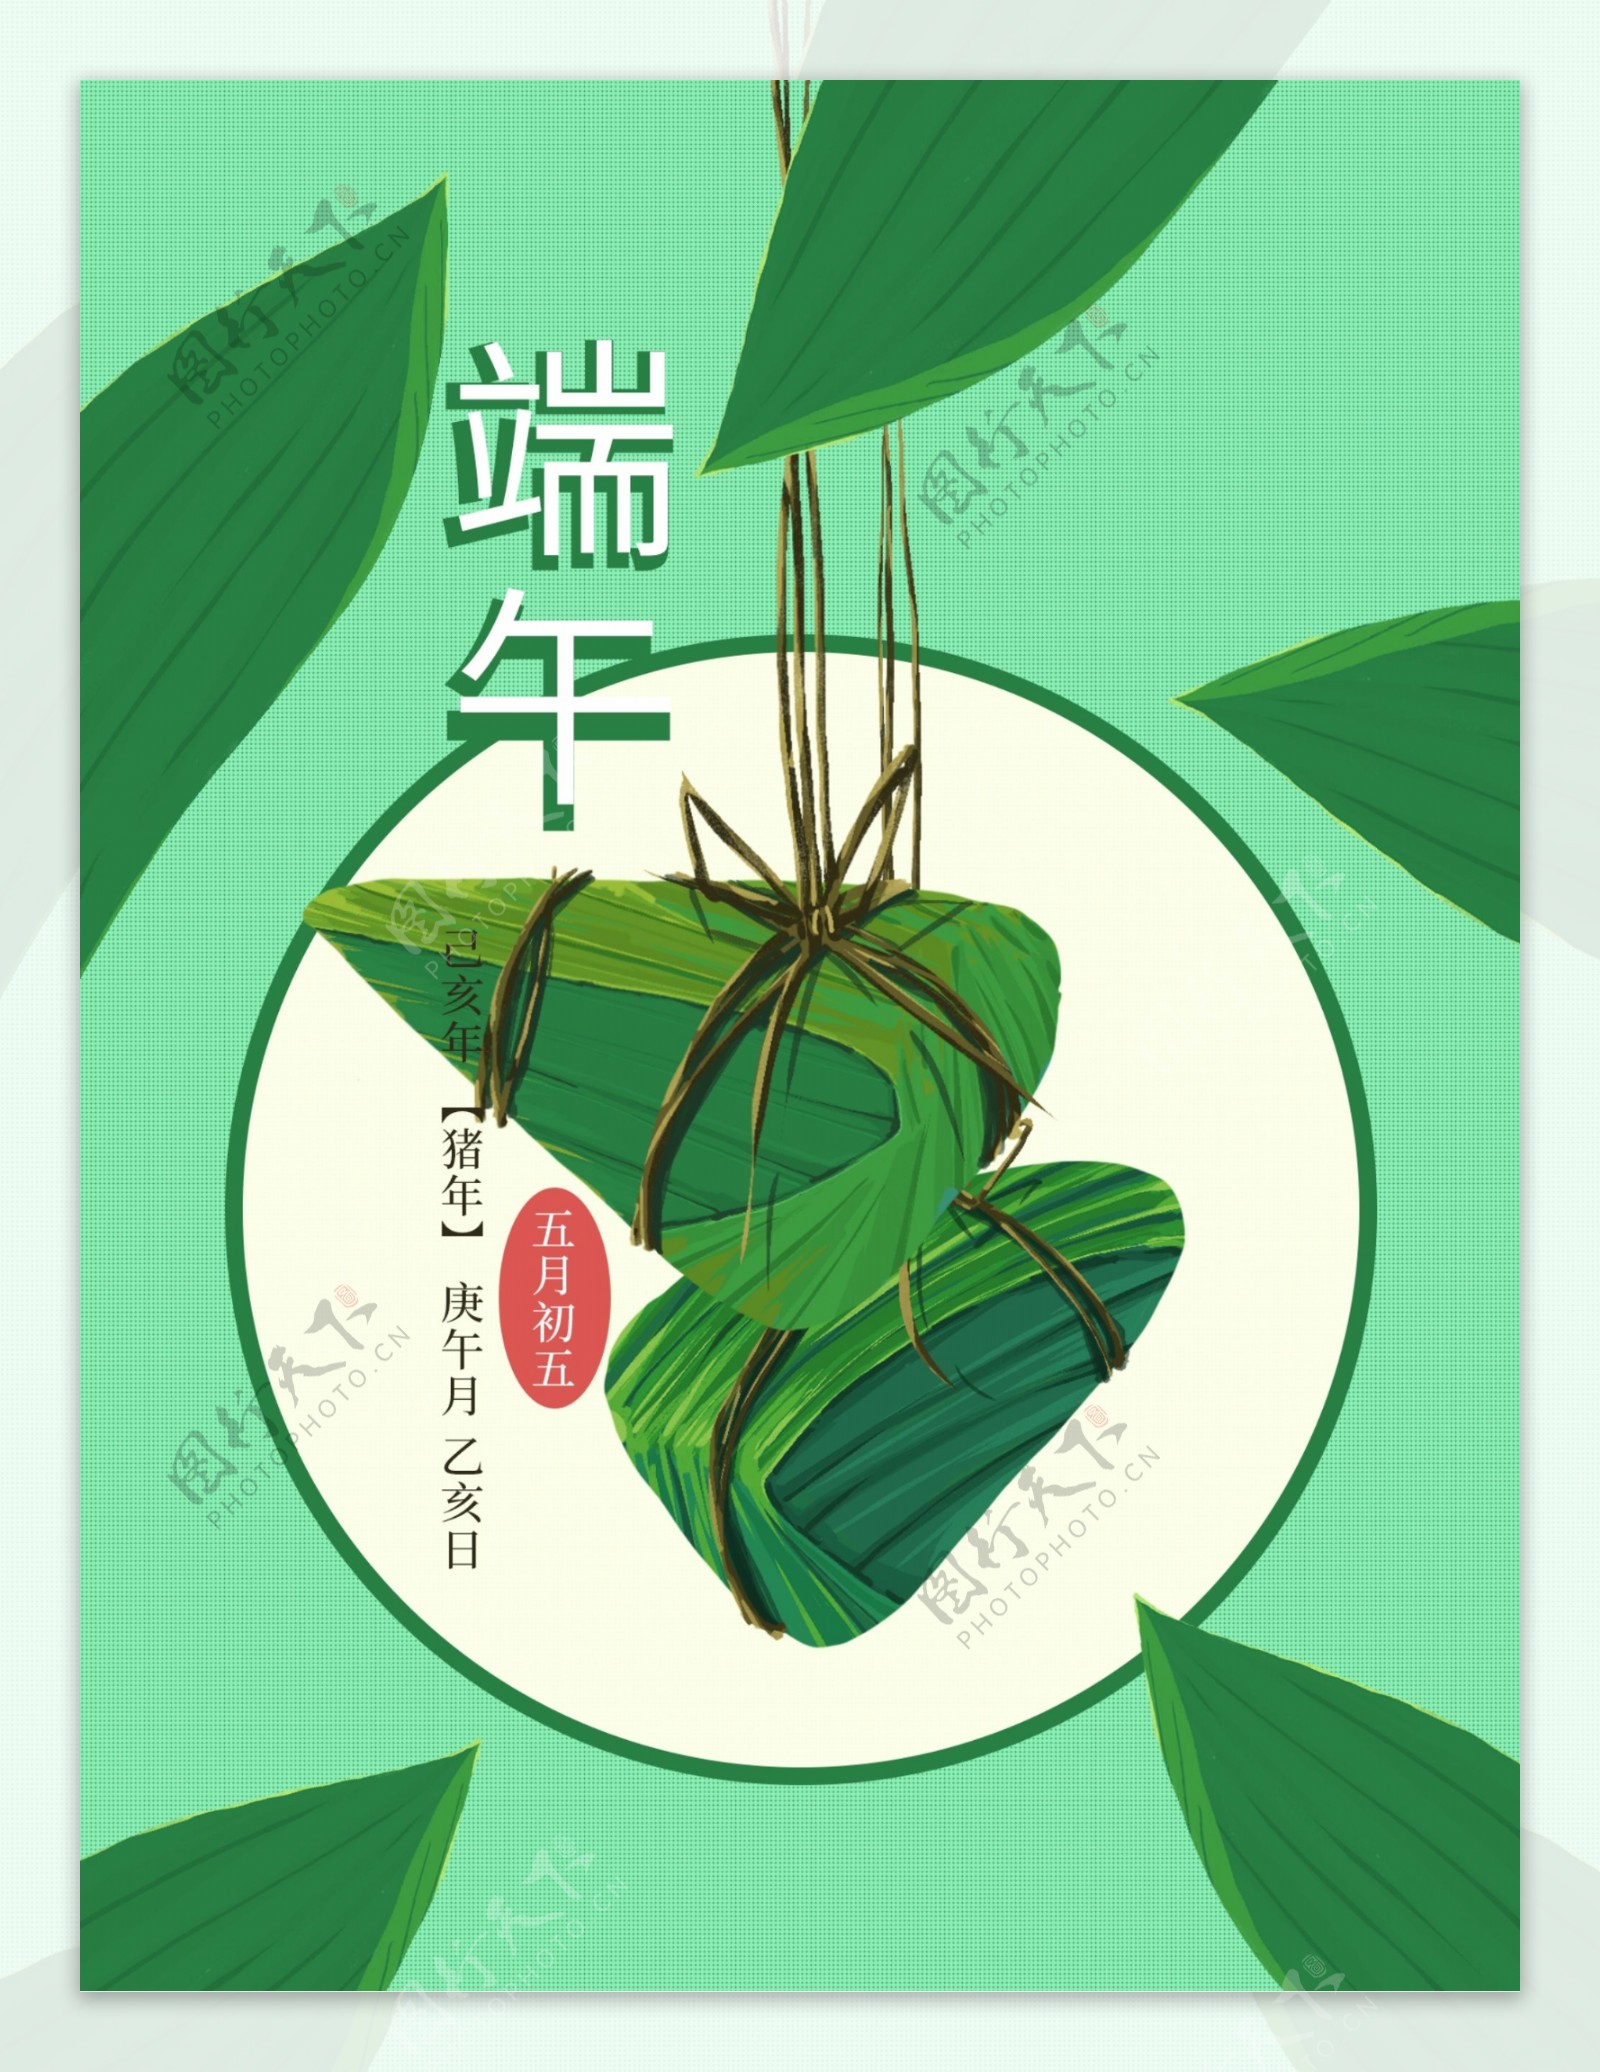 原创手绘端午节粽子食品包装插画